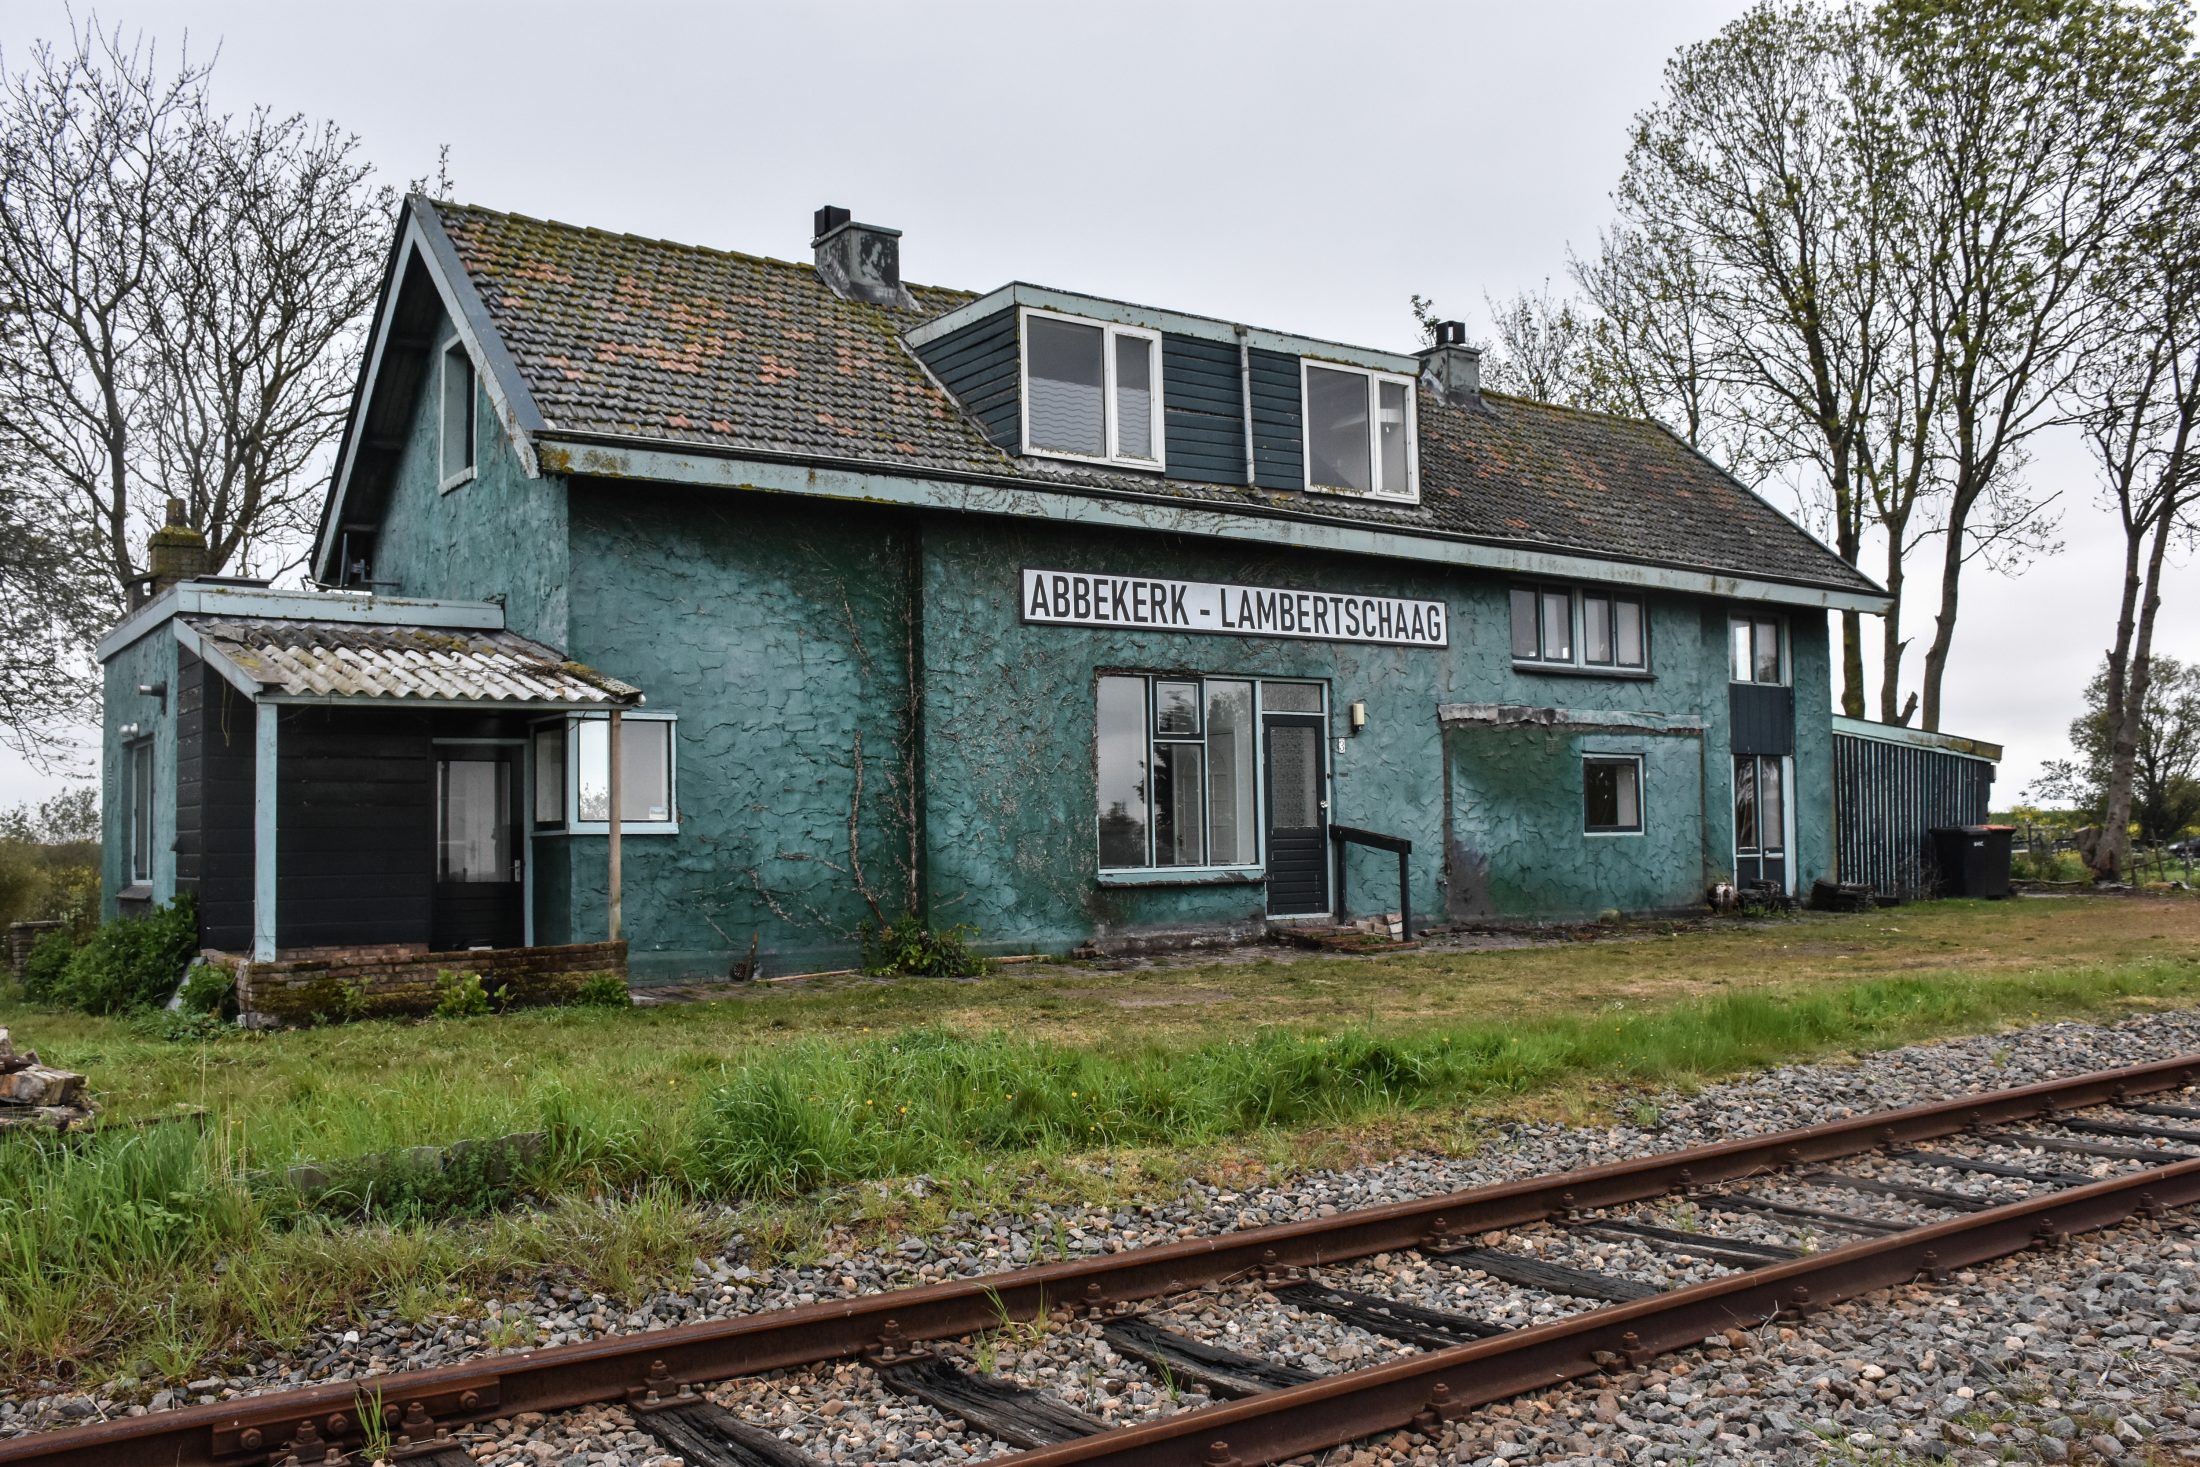 Station Abbekerk Lambertschaag